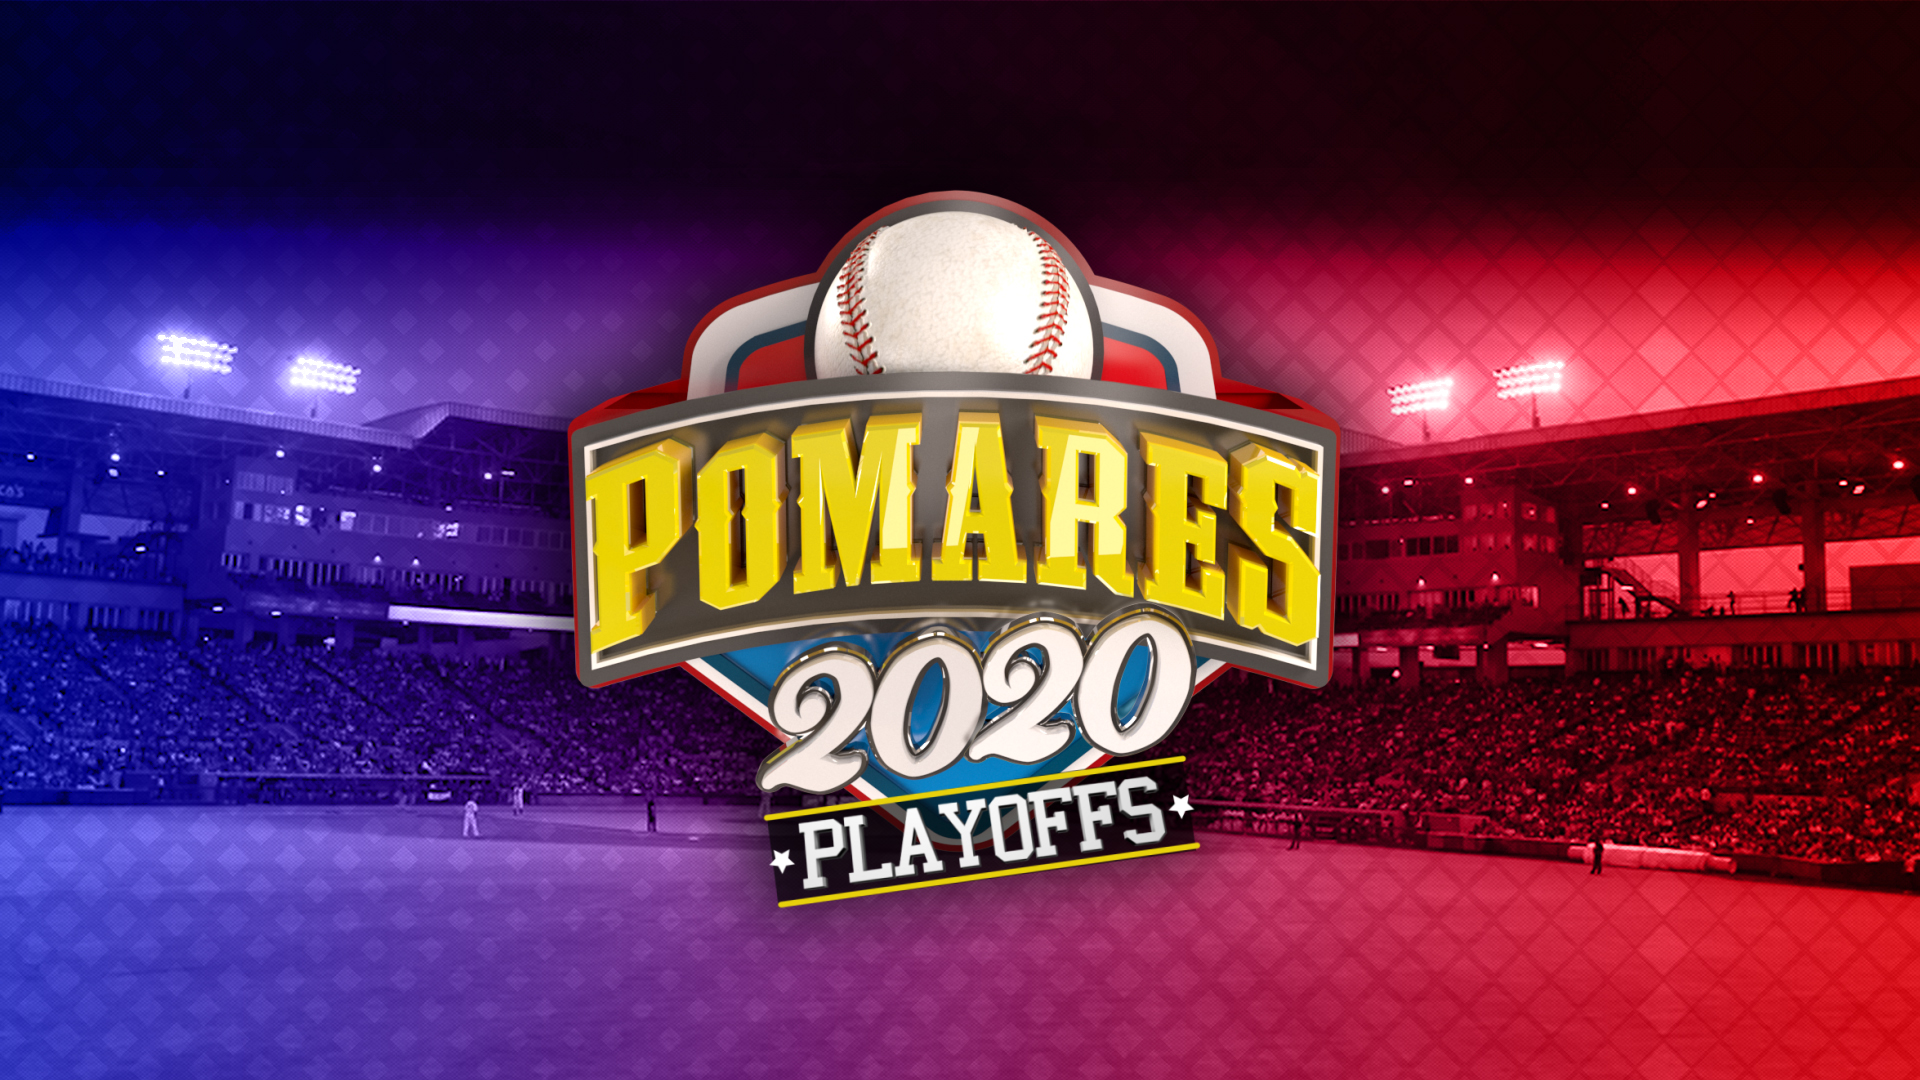 Logo Oficial de los Playoffs 2020 del Campeonato Germán Pomares Ordoñez.